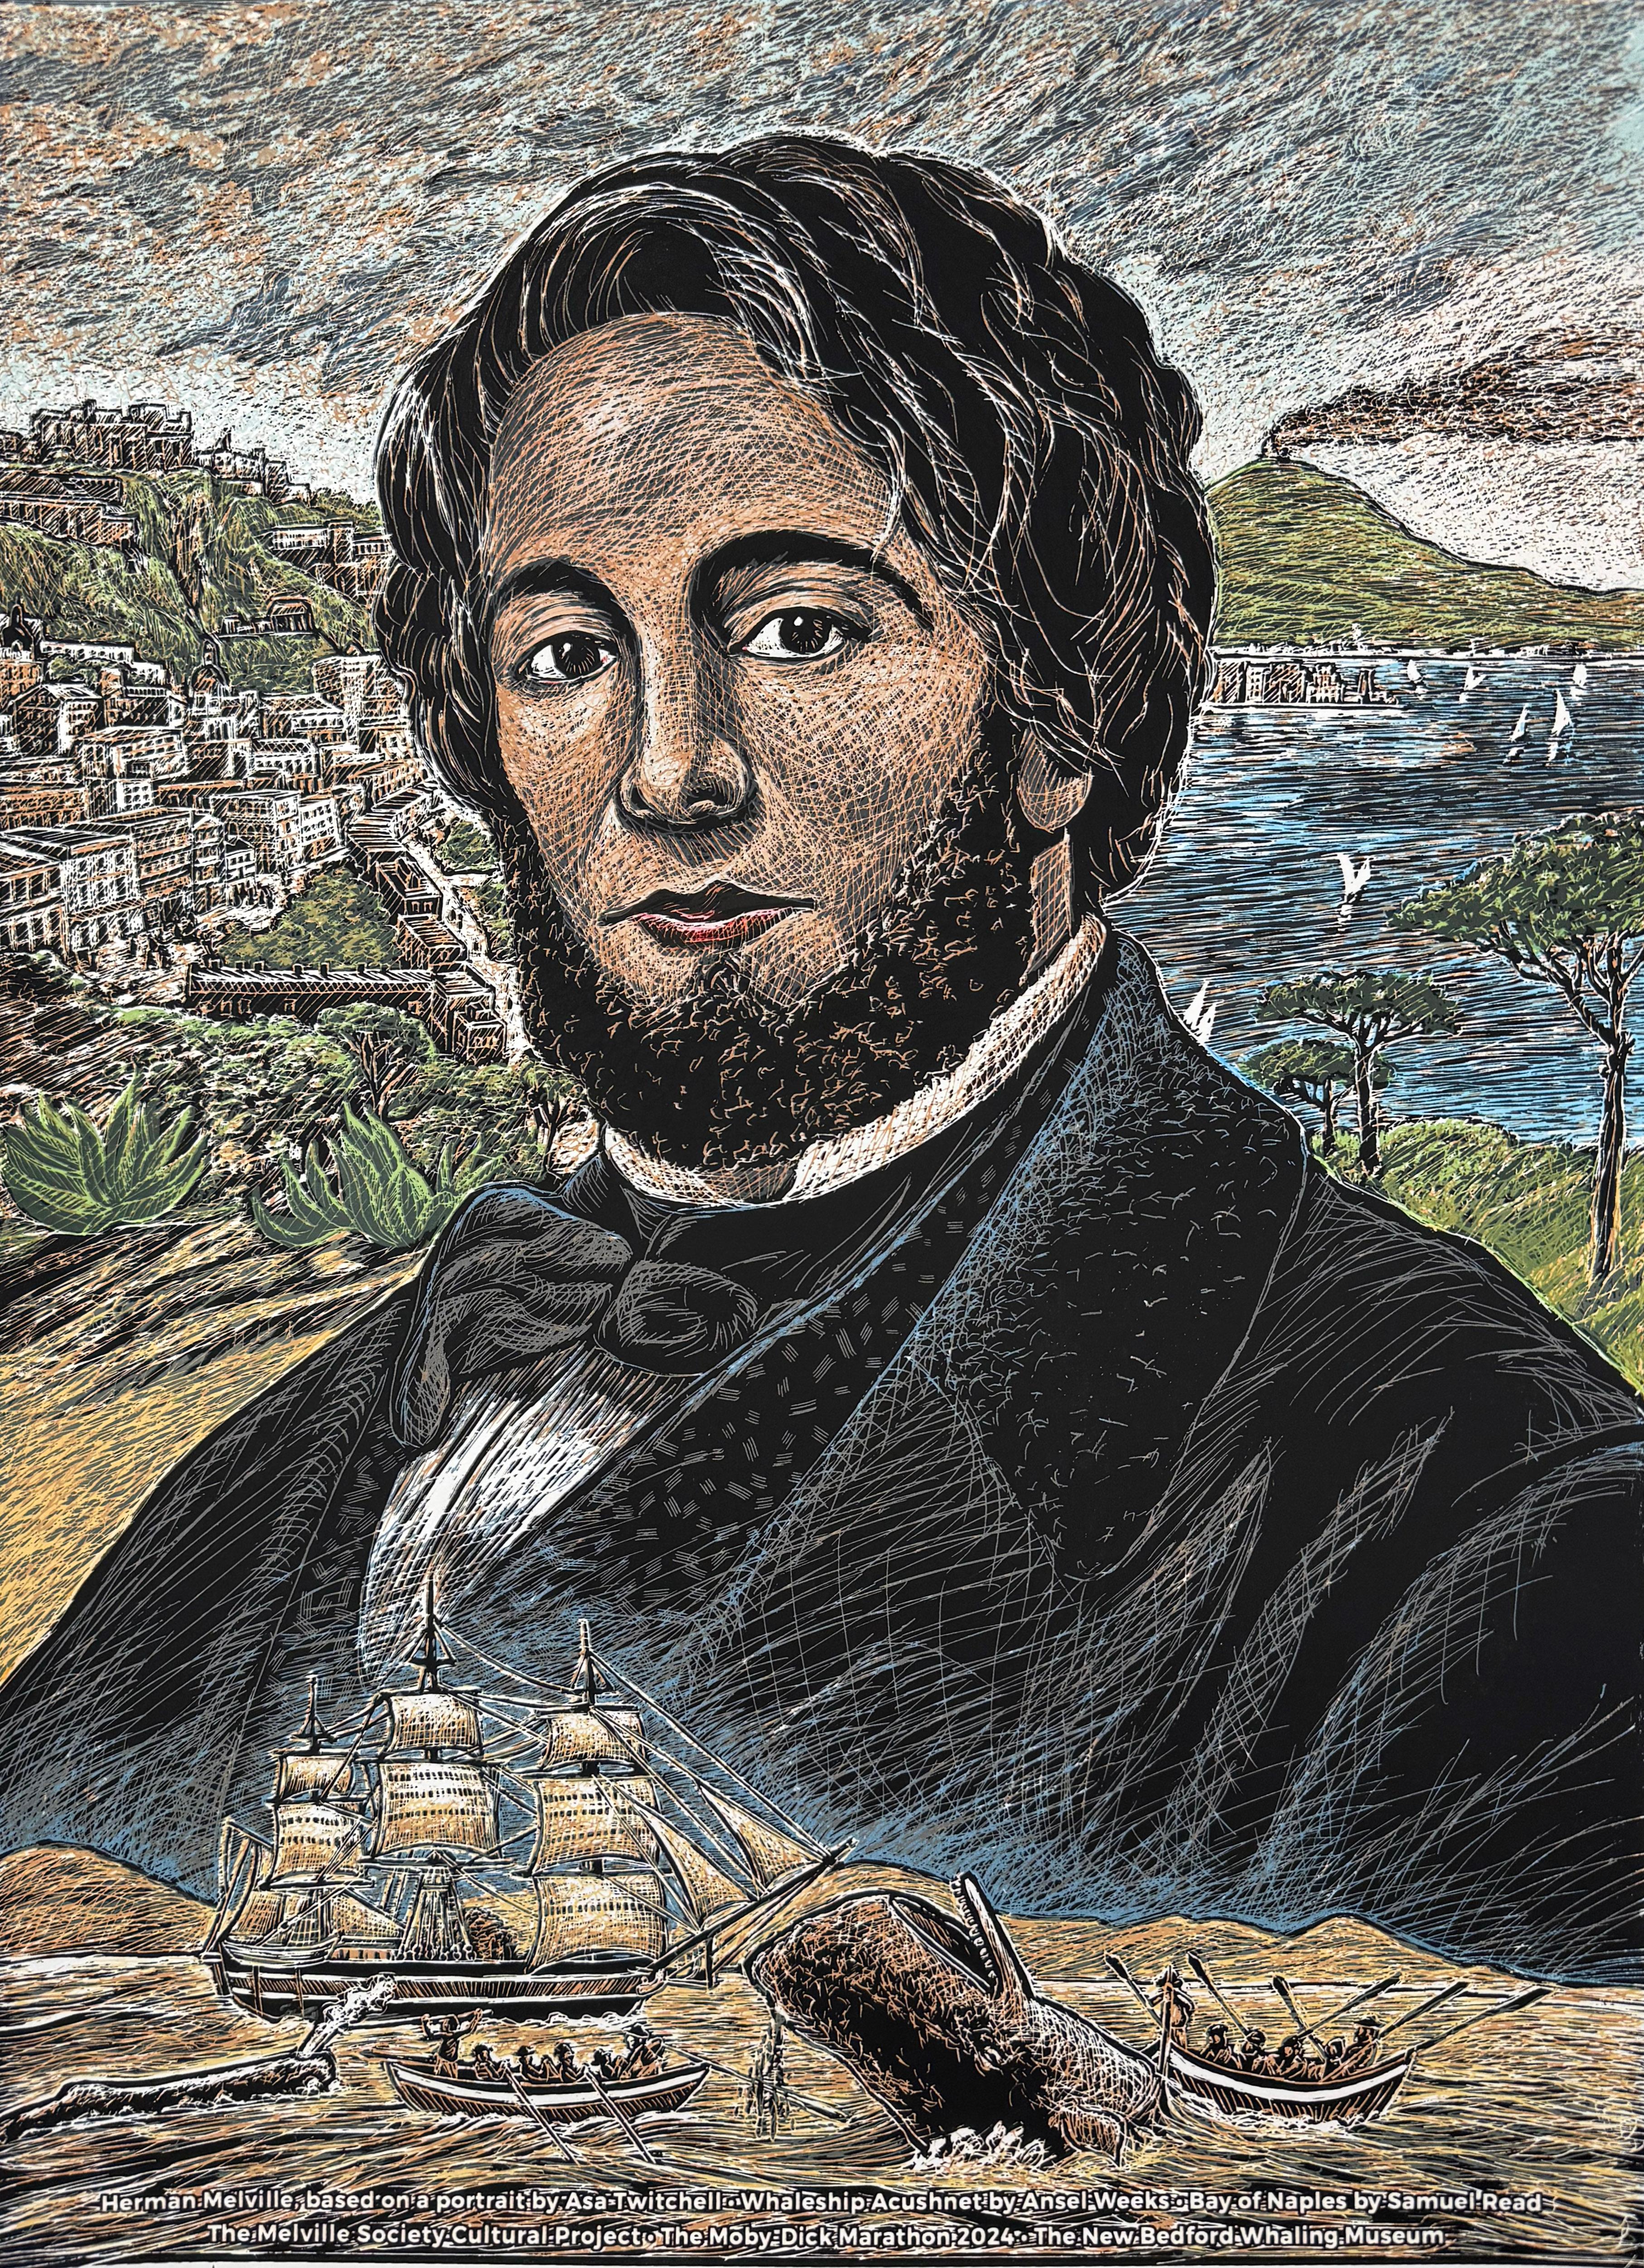 Porträt von Henry Melville, dem Autor von Moby Dick. Das Porträt ist ein Begleitstück zu Or, The Whale (2019-20), einer 14 mal 51 Fuß großen Wandmalerei, die die Geschichte und die Kosten des amerikanischen Kapitalismus anhand des Bildes des Wals